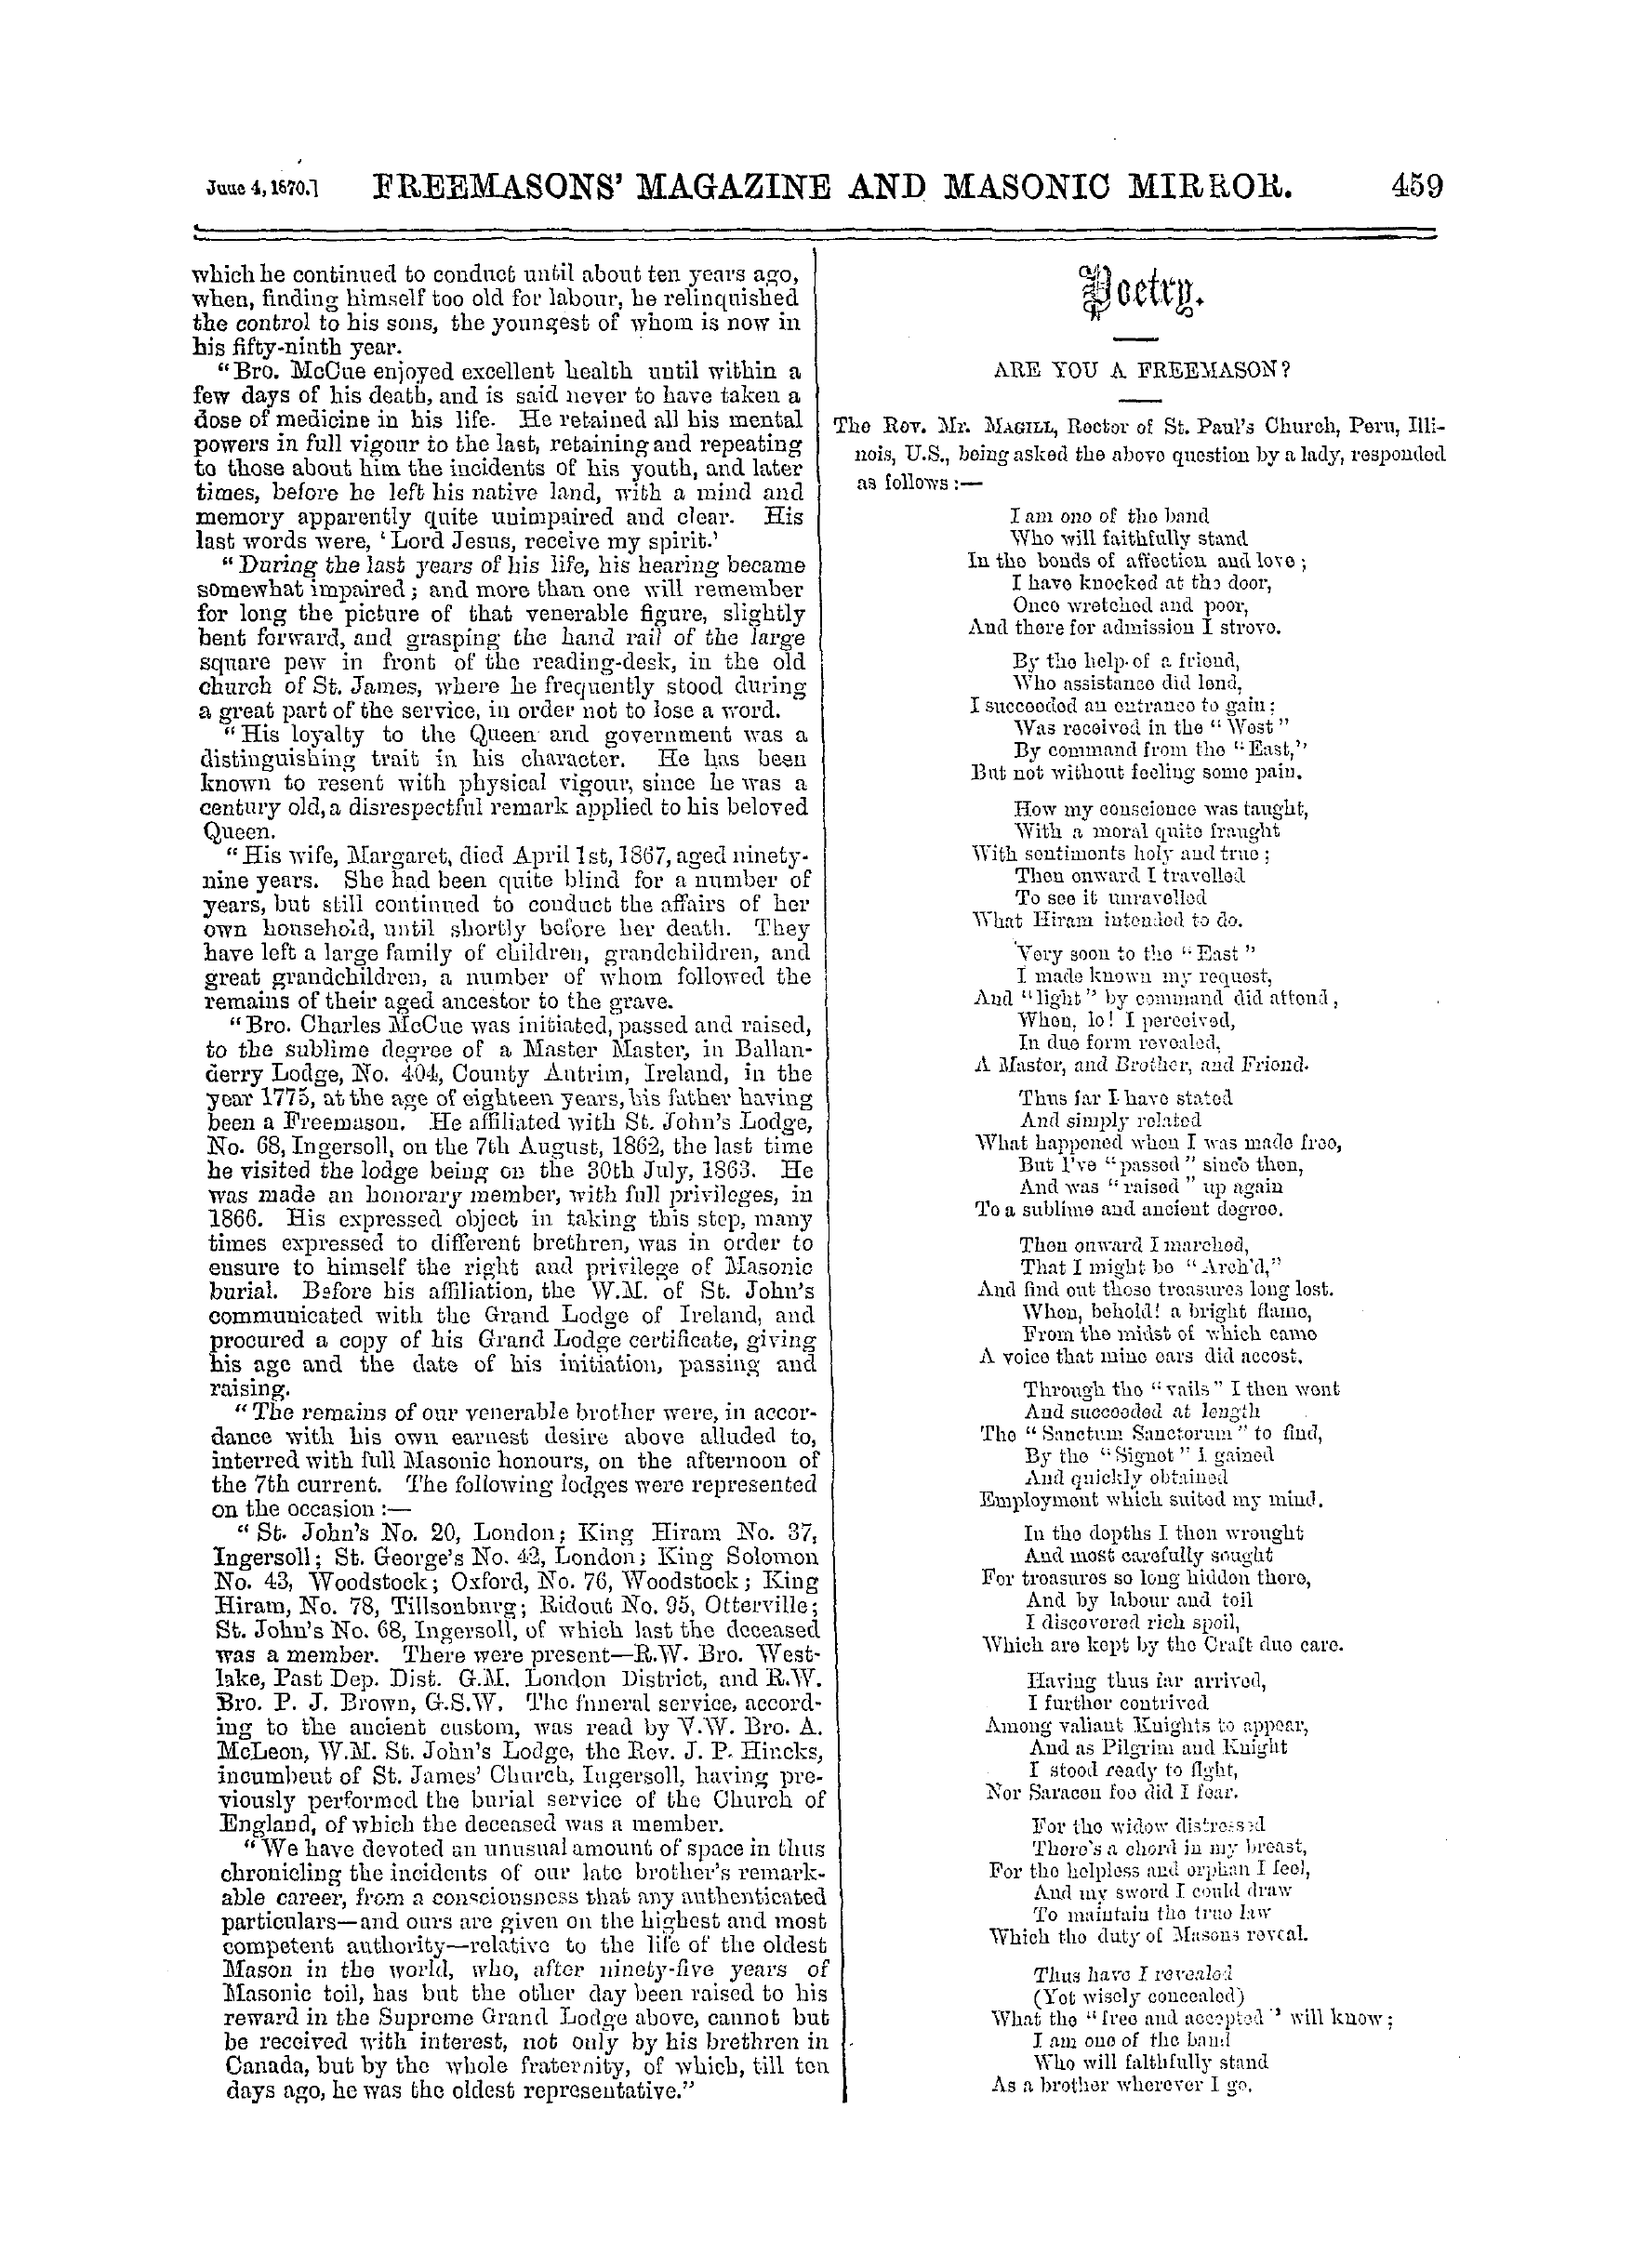 The Freemasons' Monthly Magazine: 1870-06-04: 19